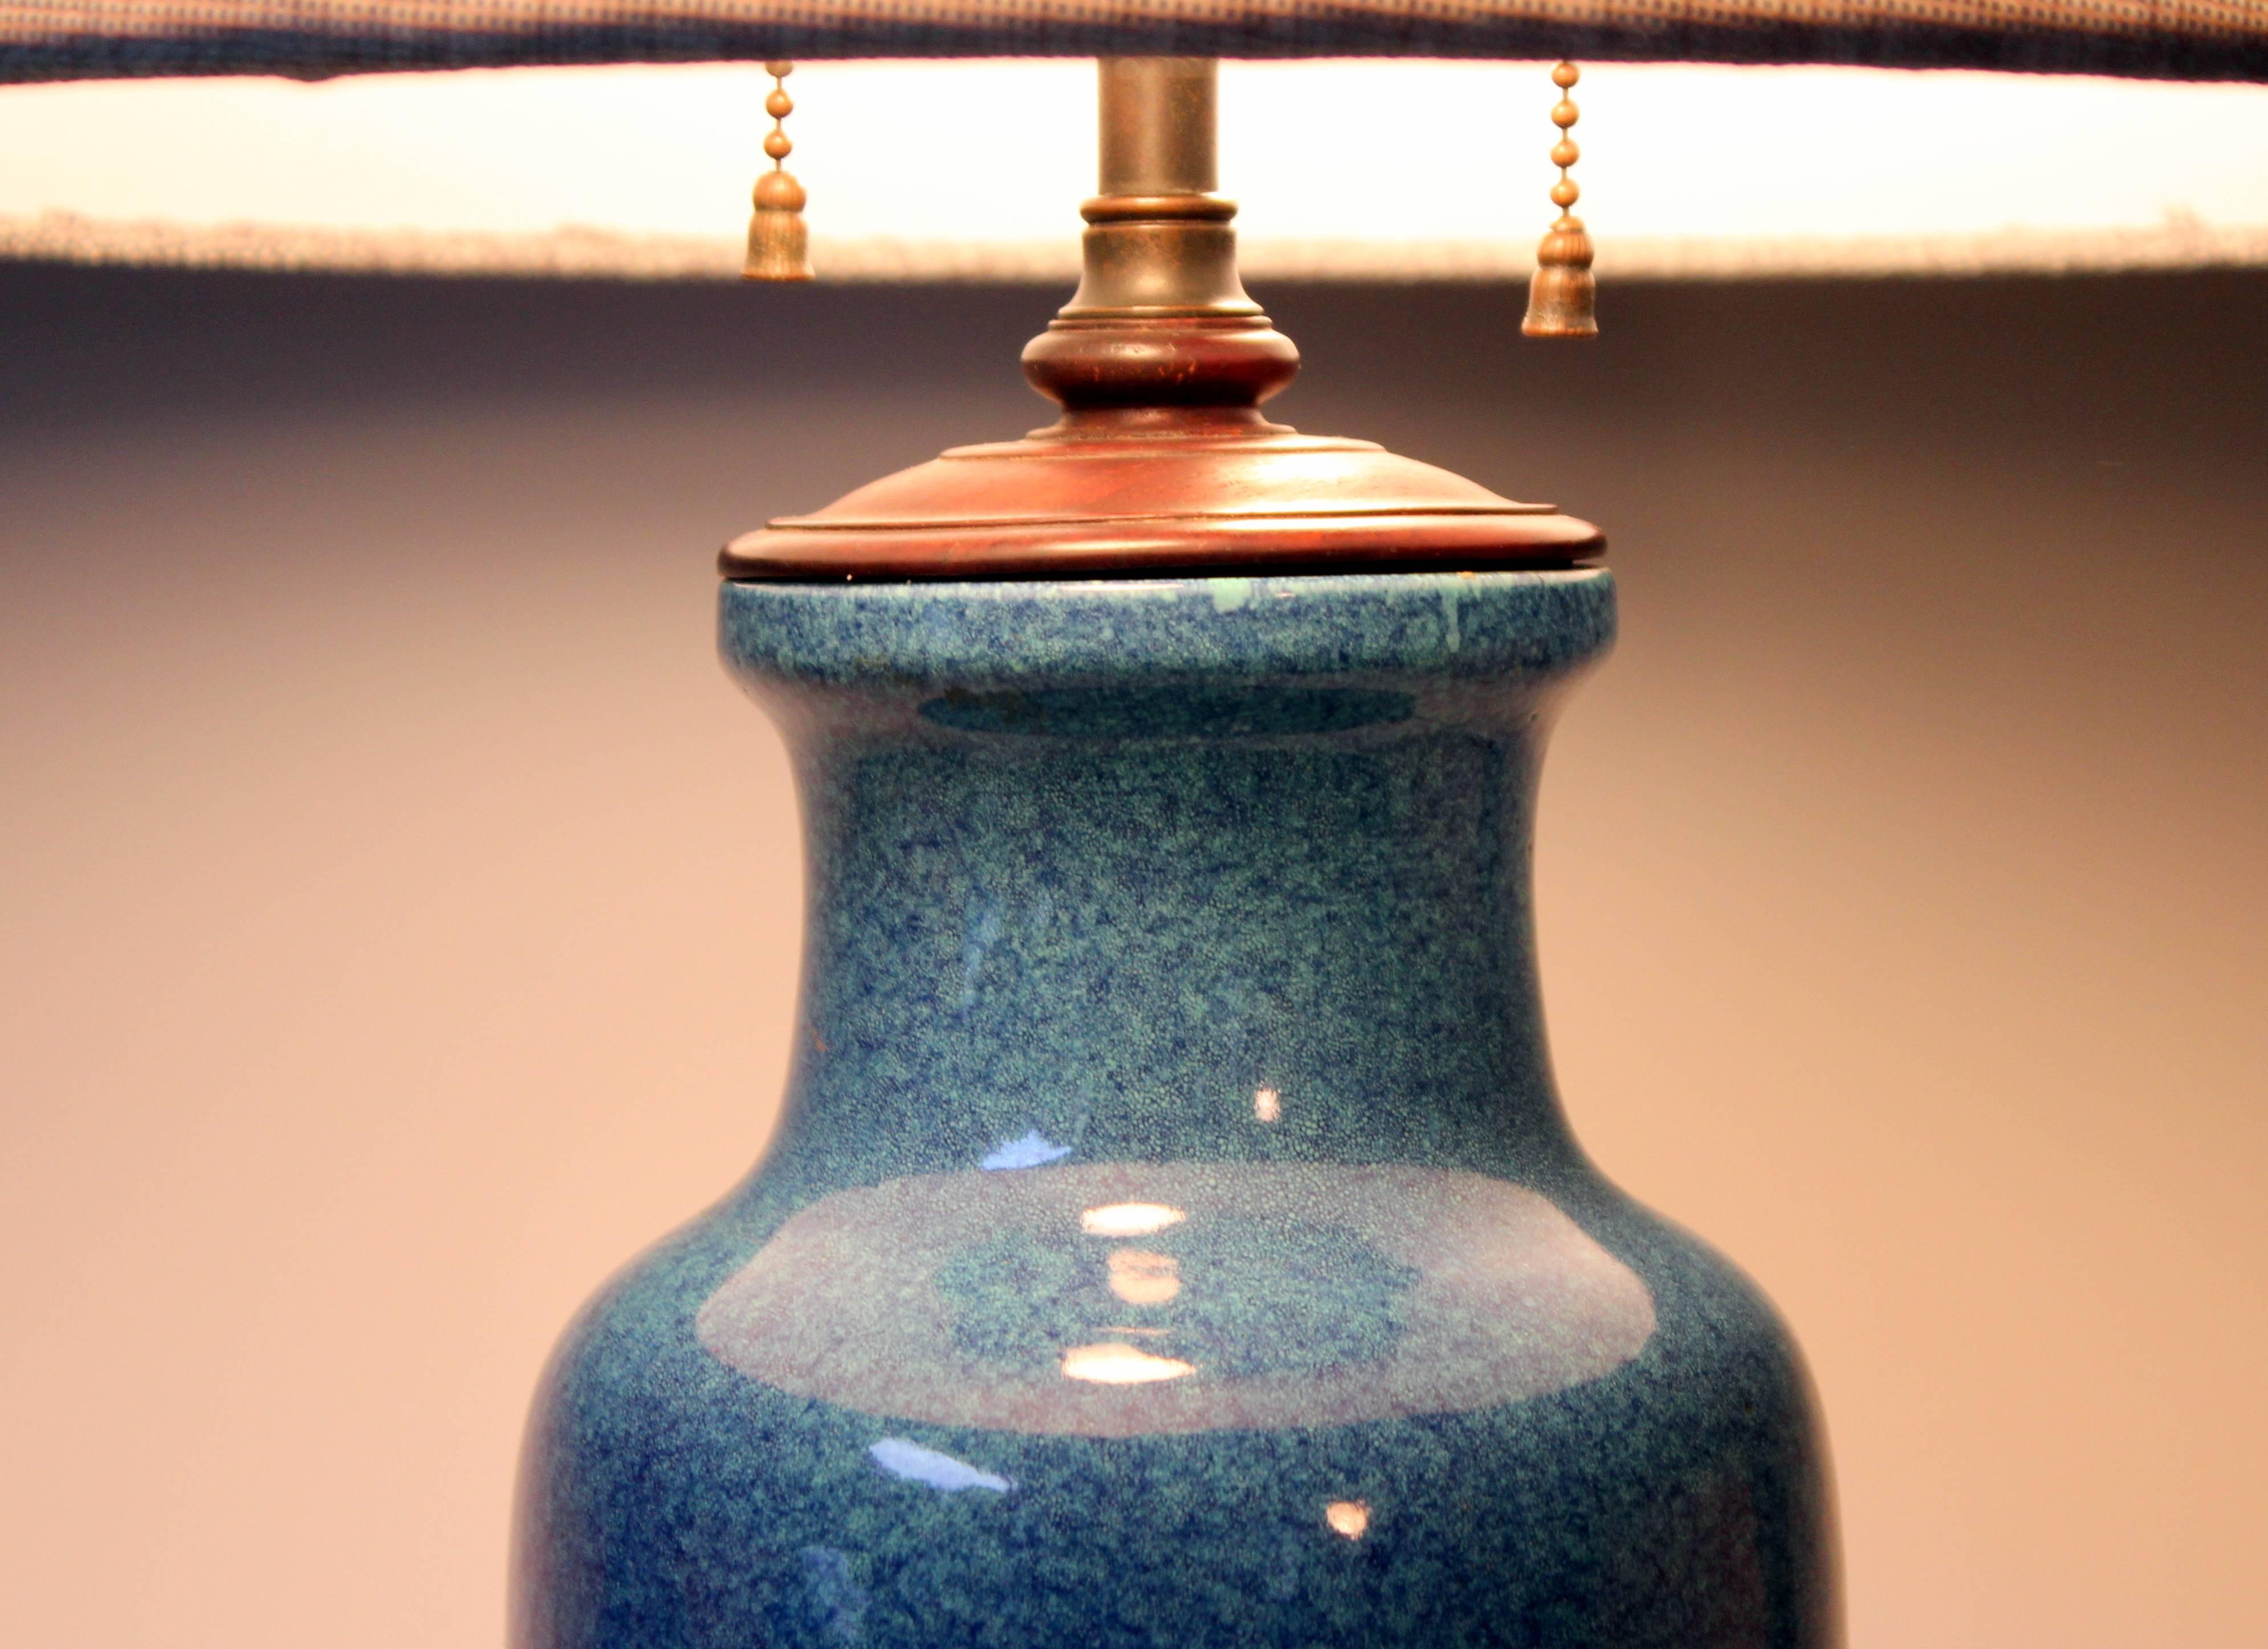 Antique Chinese Porcelain Robin's Egg Blue Vase Lamp Carved Base Bronze Hardware 2